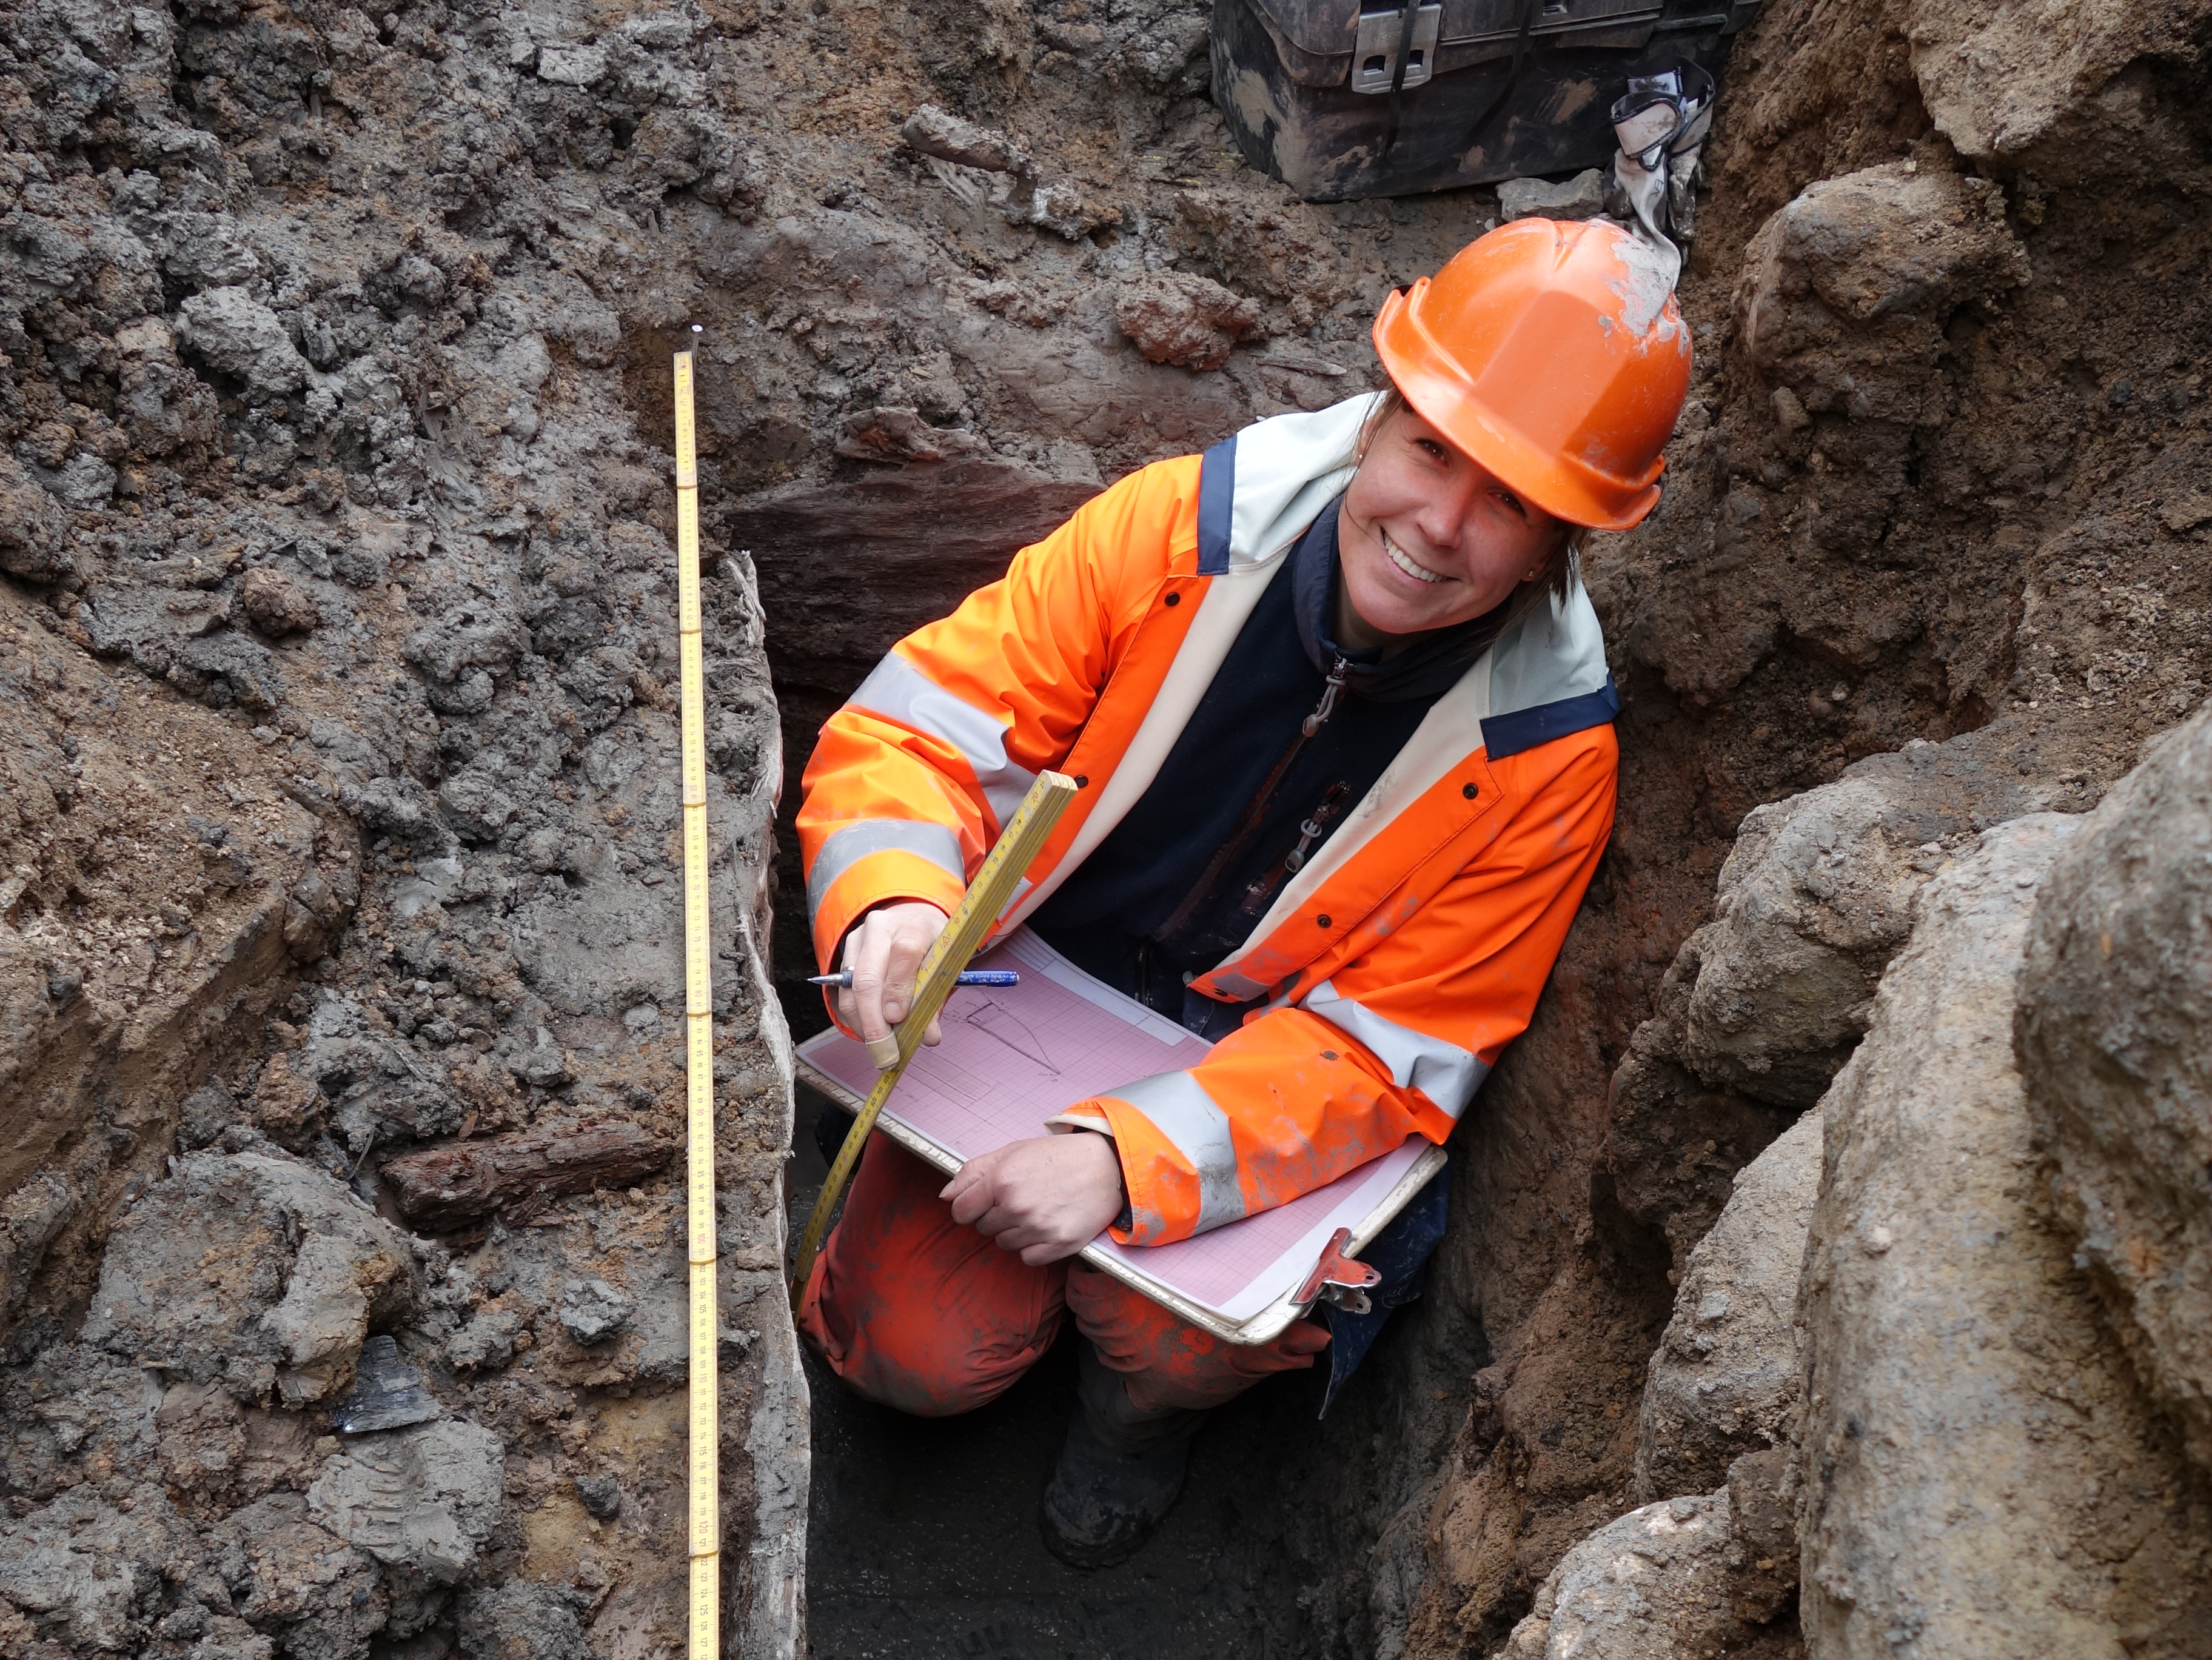 En arkeolog i full färd med att dokumentera något under en arkeologisk utgrävning i lerig, stenig grop.